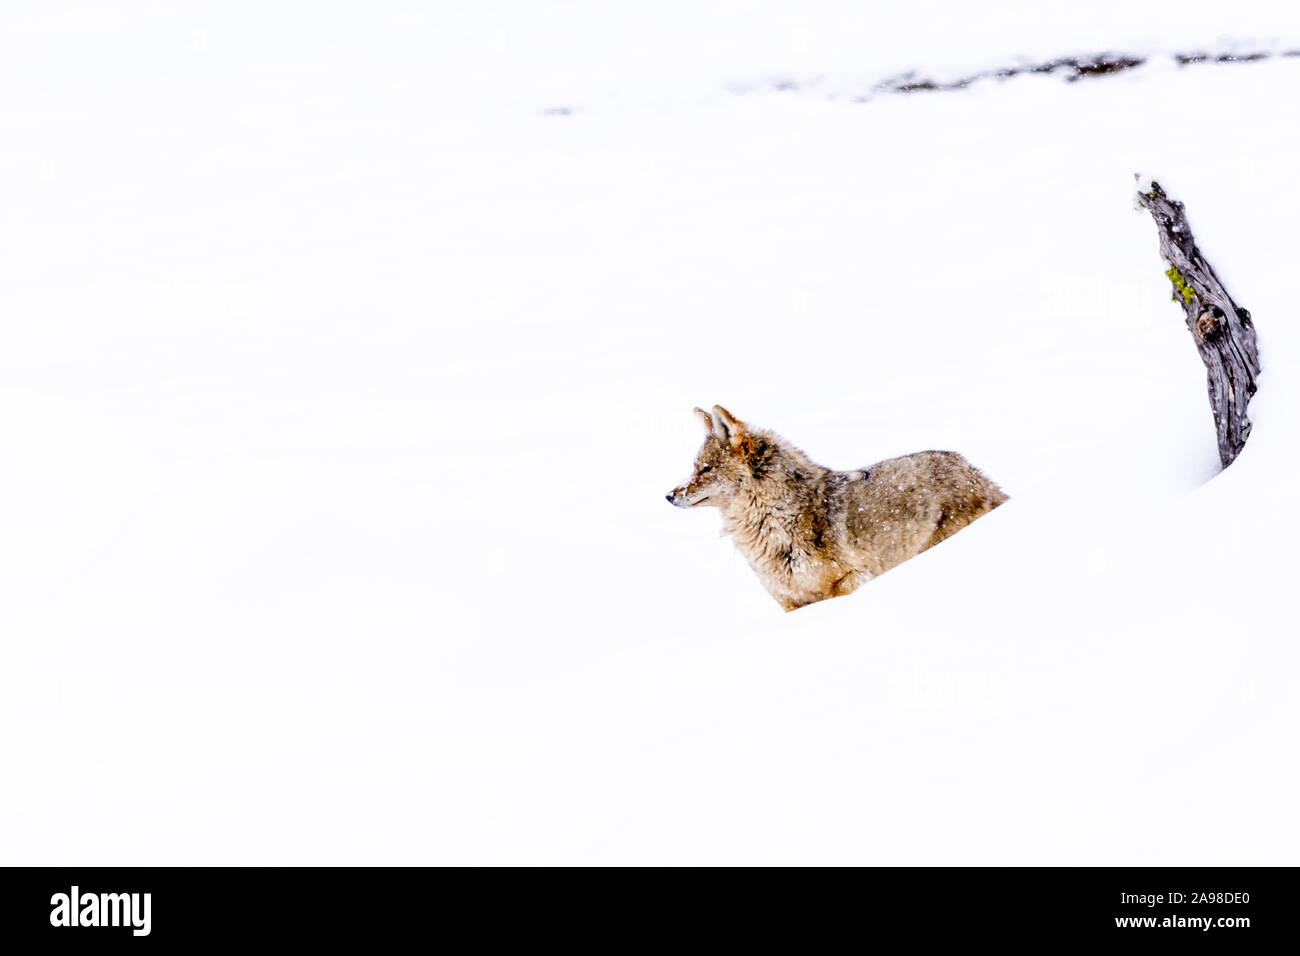 Le Coyote (Canis latrans) voyager à travers le paysage enneigé de Yellowstone National Park, Wyoming, USA. Banque D'Images